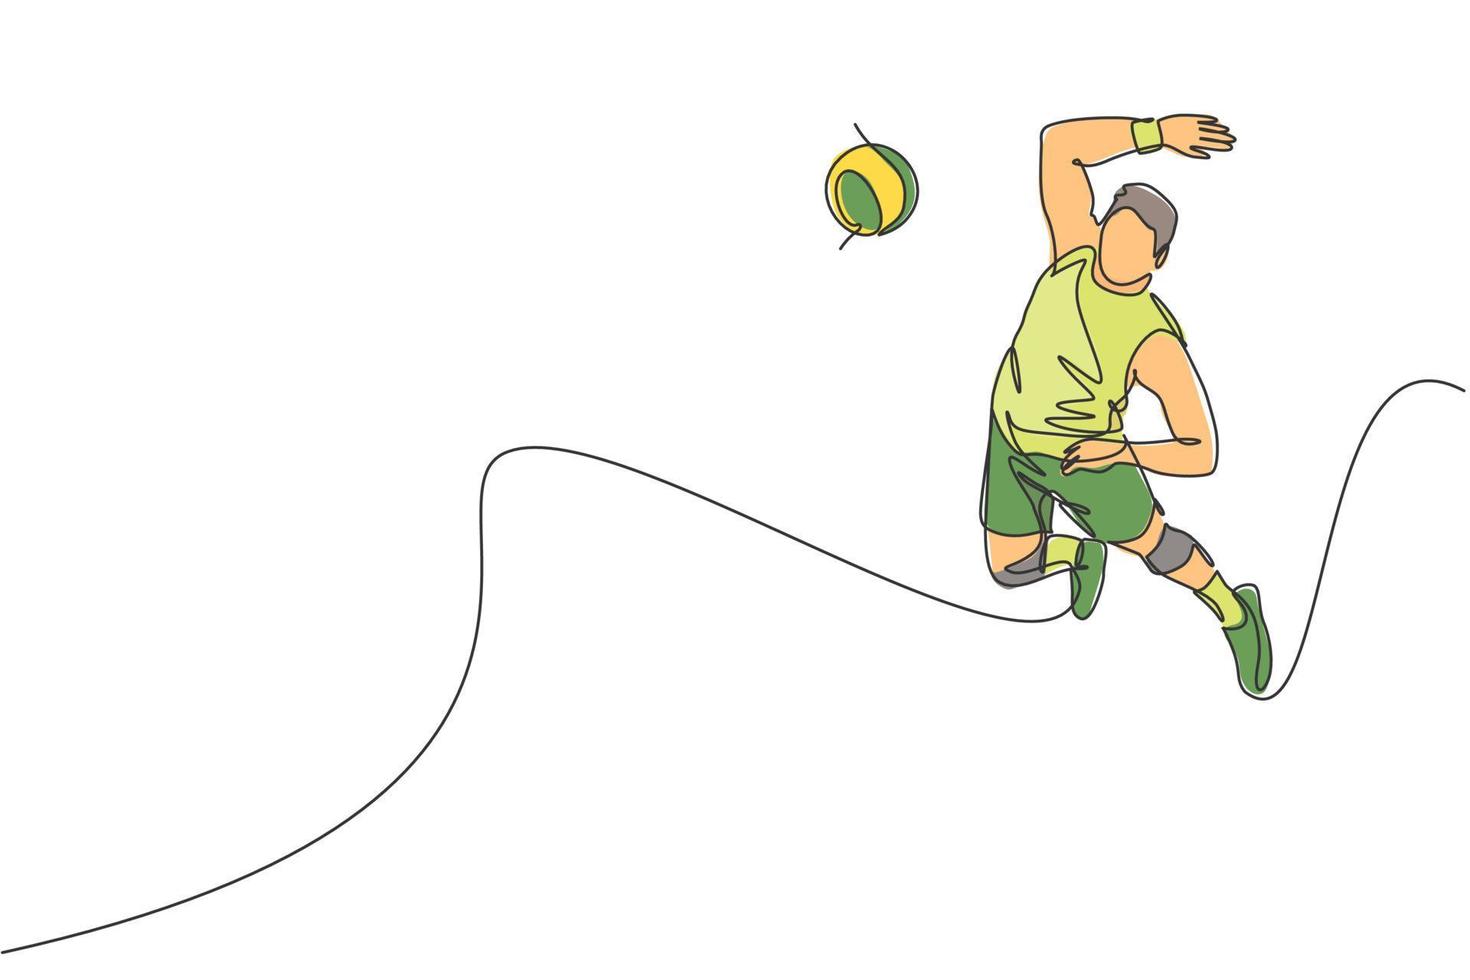 uno continuo línea dibujo de joven masculino profesional vóleibol jugador en acción saltando aplastar en corte. sano competitivo equipo deporte concepto. dinámica soltero línea dibujar diseño vector ilustración